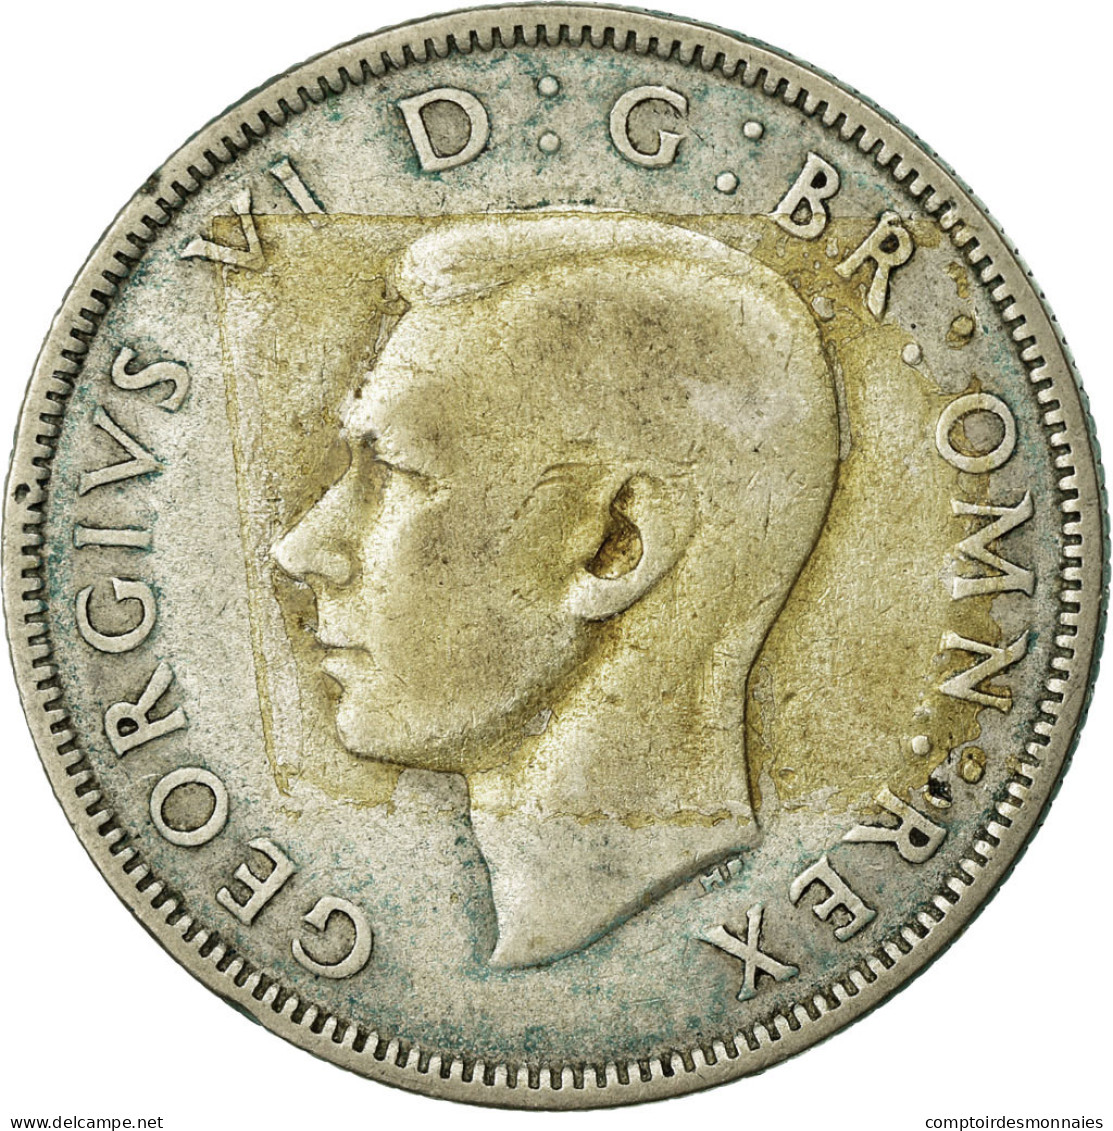 Monnaie, Grande-Bretagne, George VI, Florin, Two Shillings, 1940, TTB, Argent - J. 1 Florin / 2 Schillings